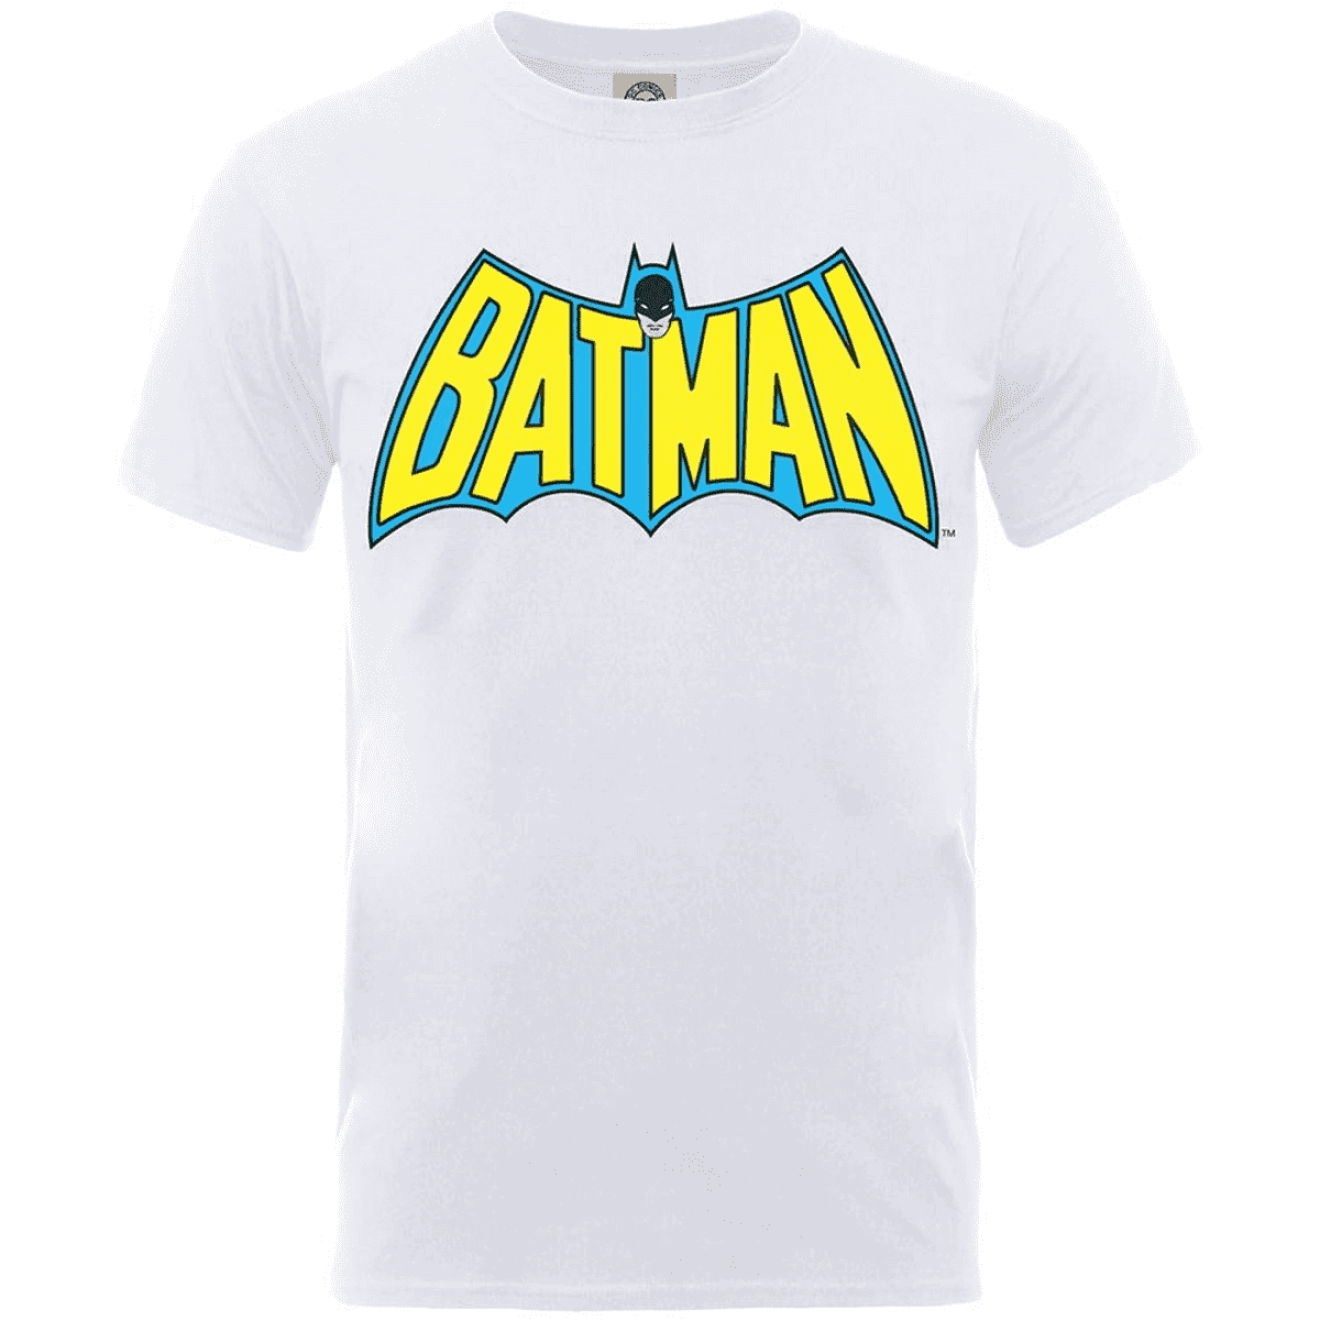 Batman - Children's t-shirt Retro